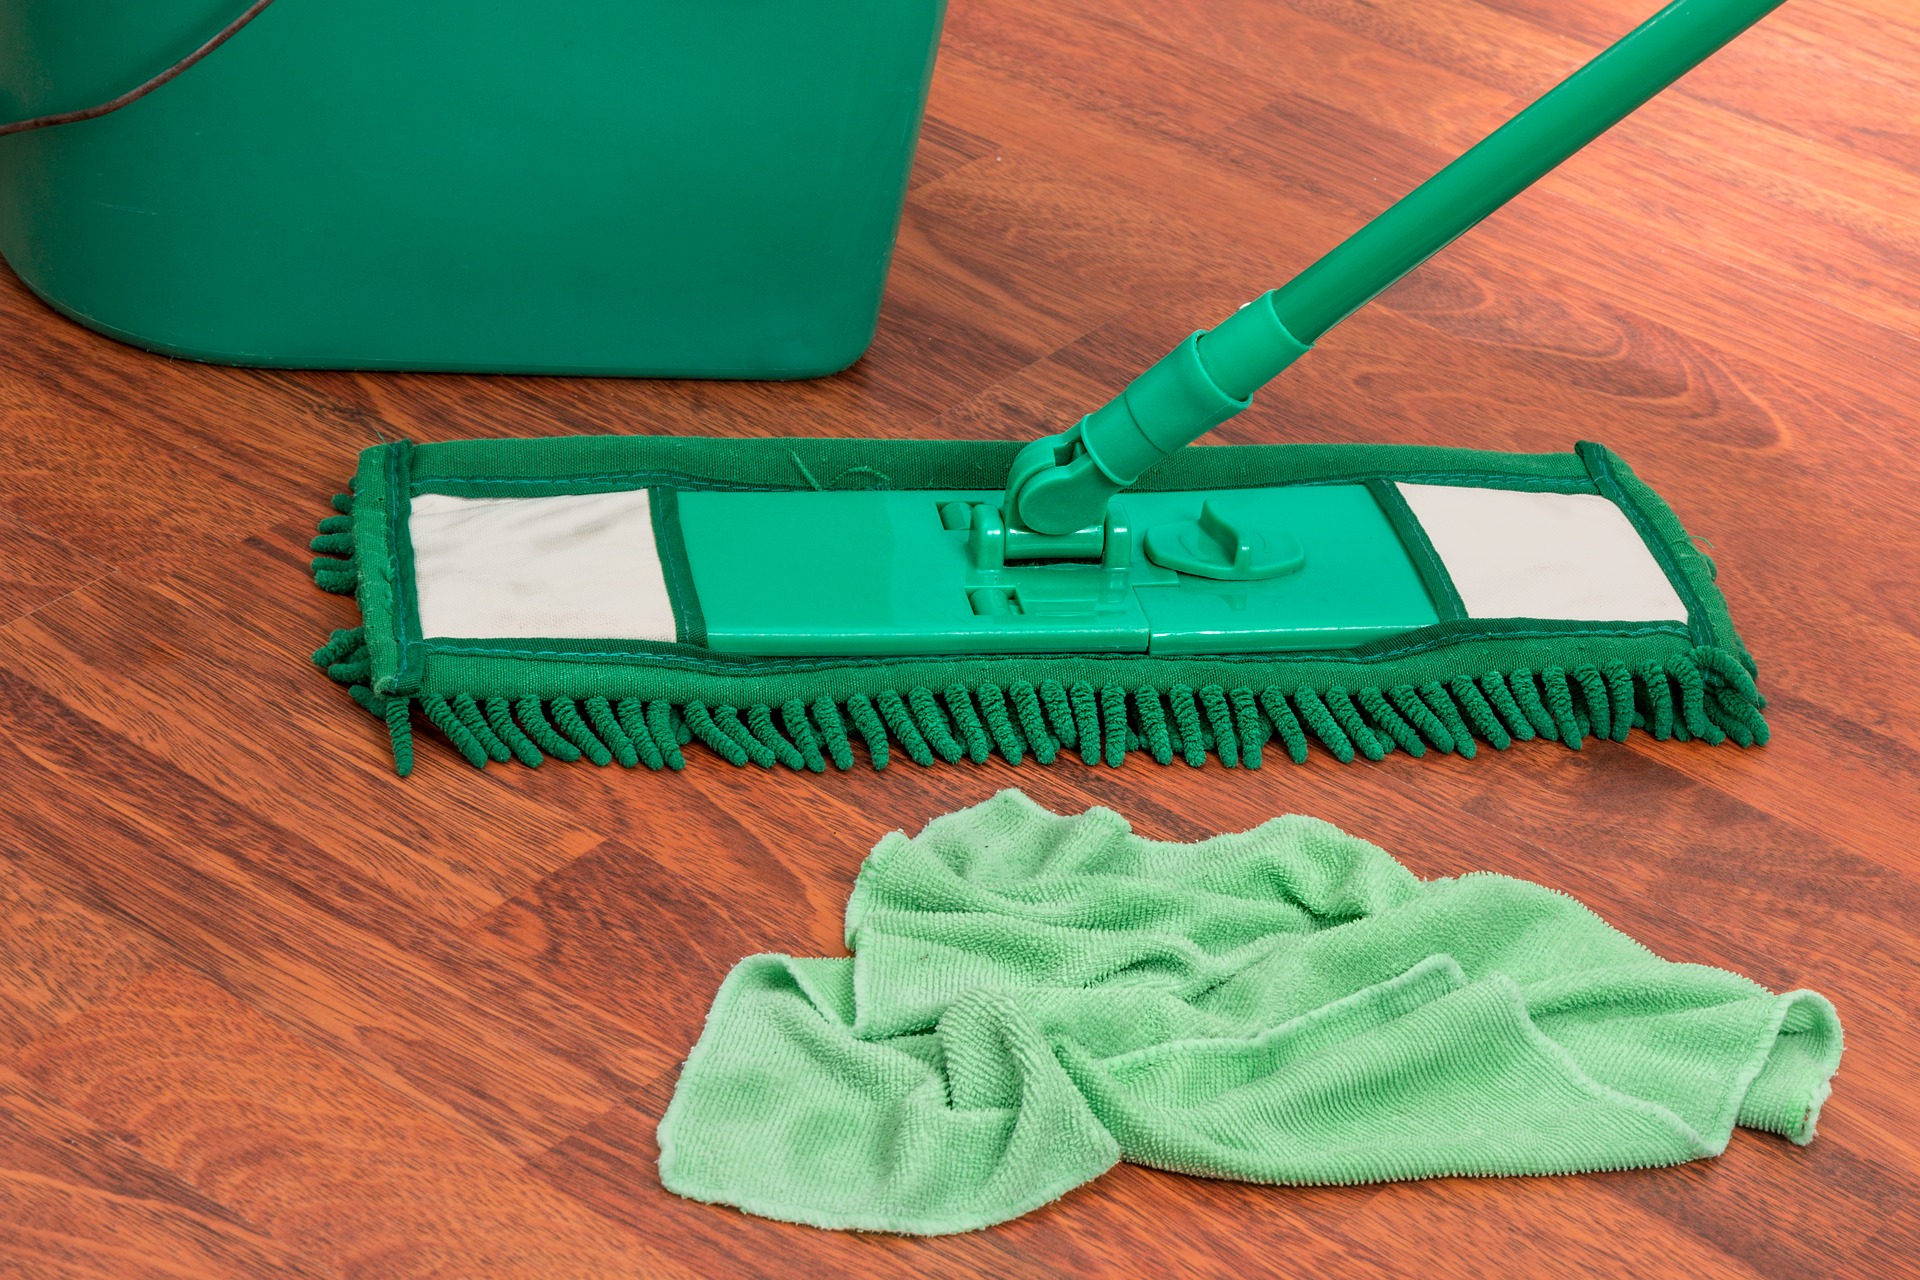 Stručný návod na správnou dezinfekci ploch v práci i doma: stáhněte si ho nebo vytiskněte